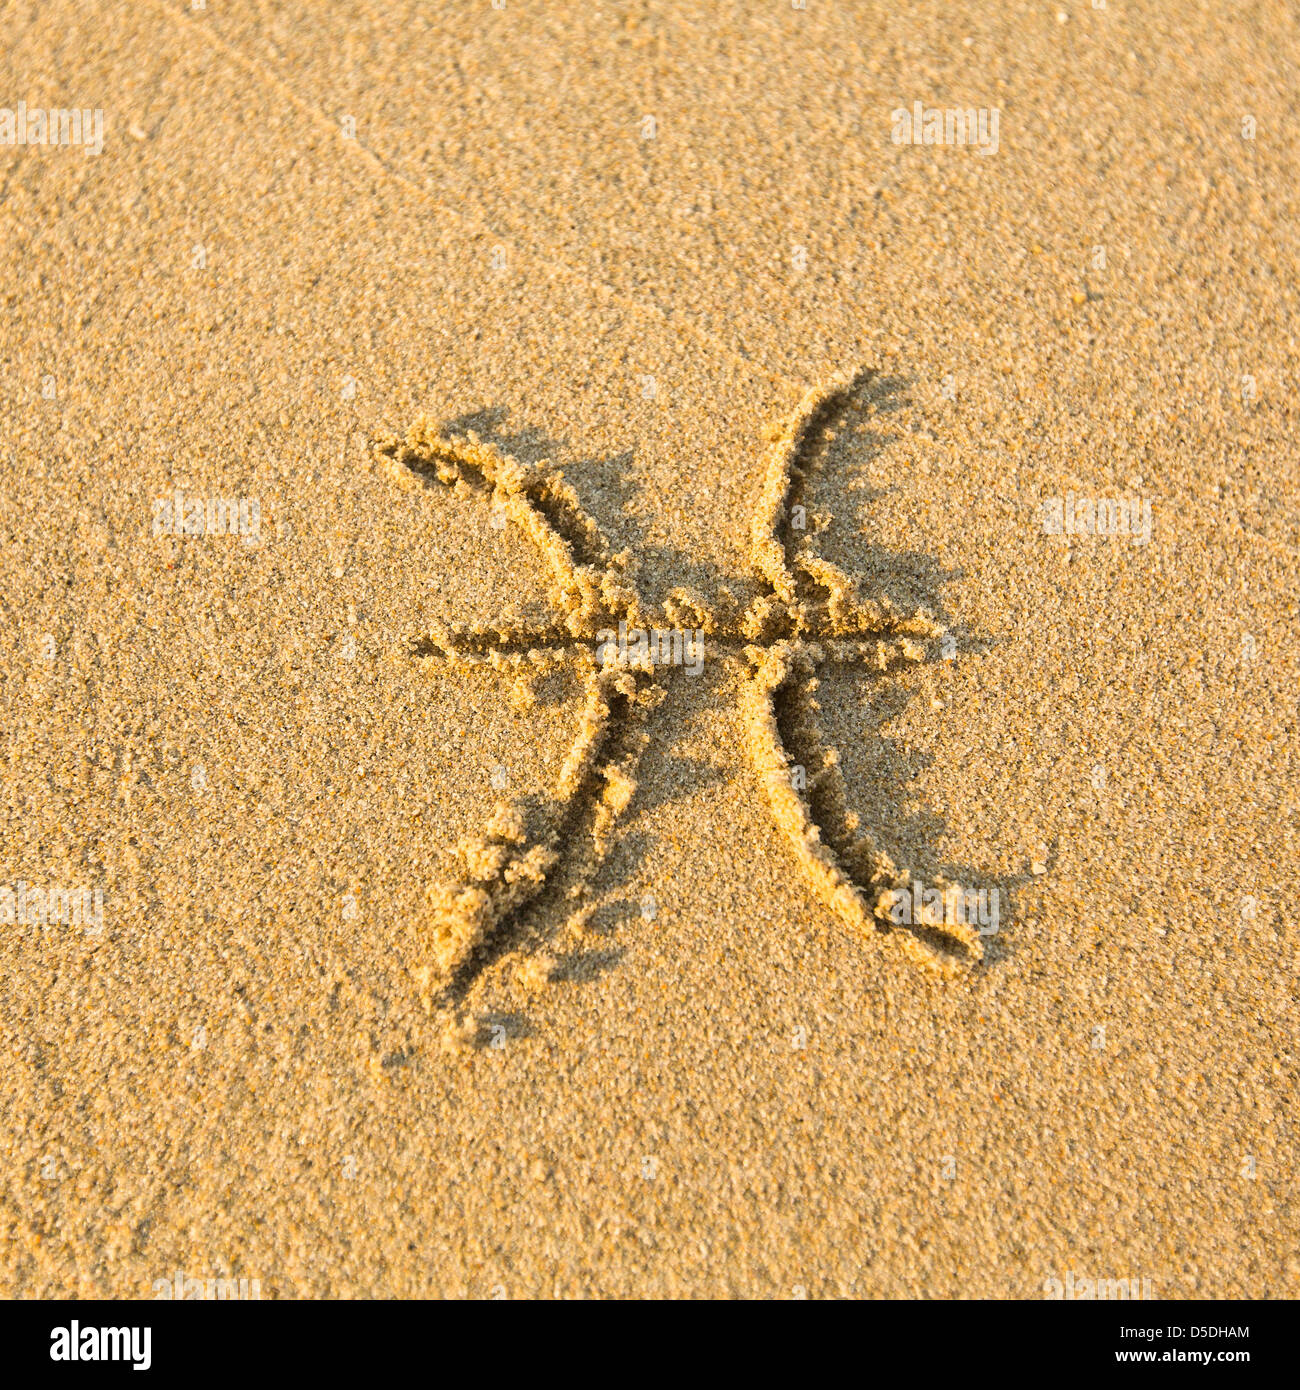 Signe astrologique Poissons, dessiné sur la facture, le sable de la plage. Les signes du zodiaque (série) Banque D'Images